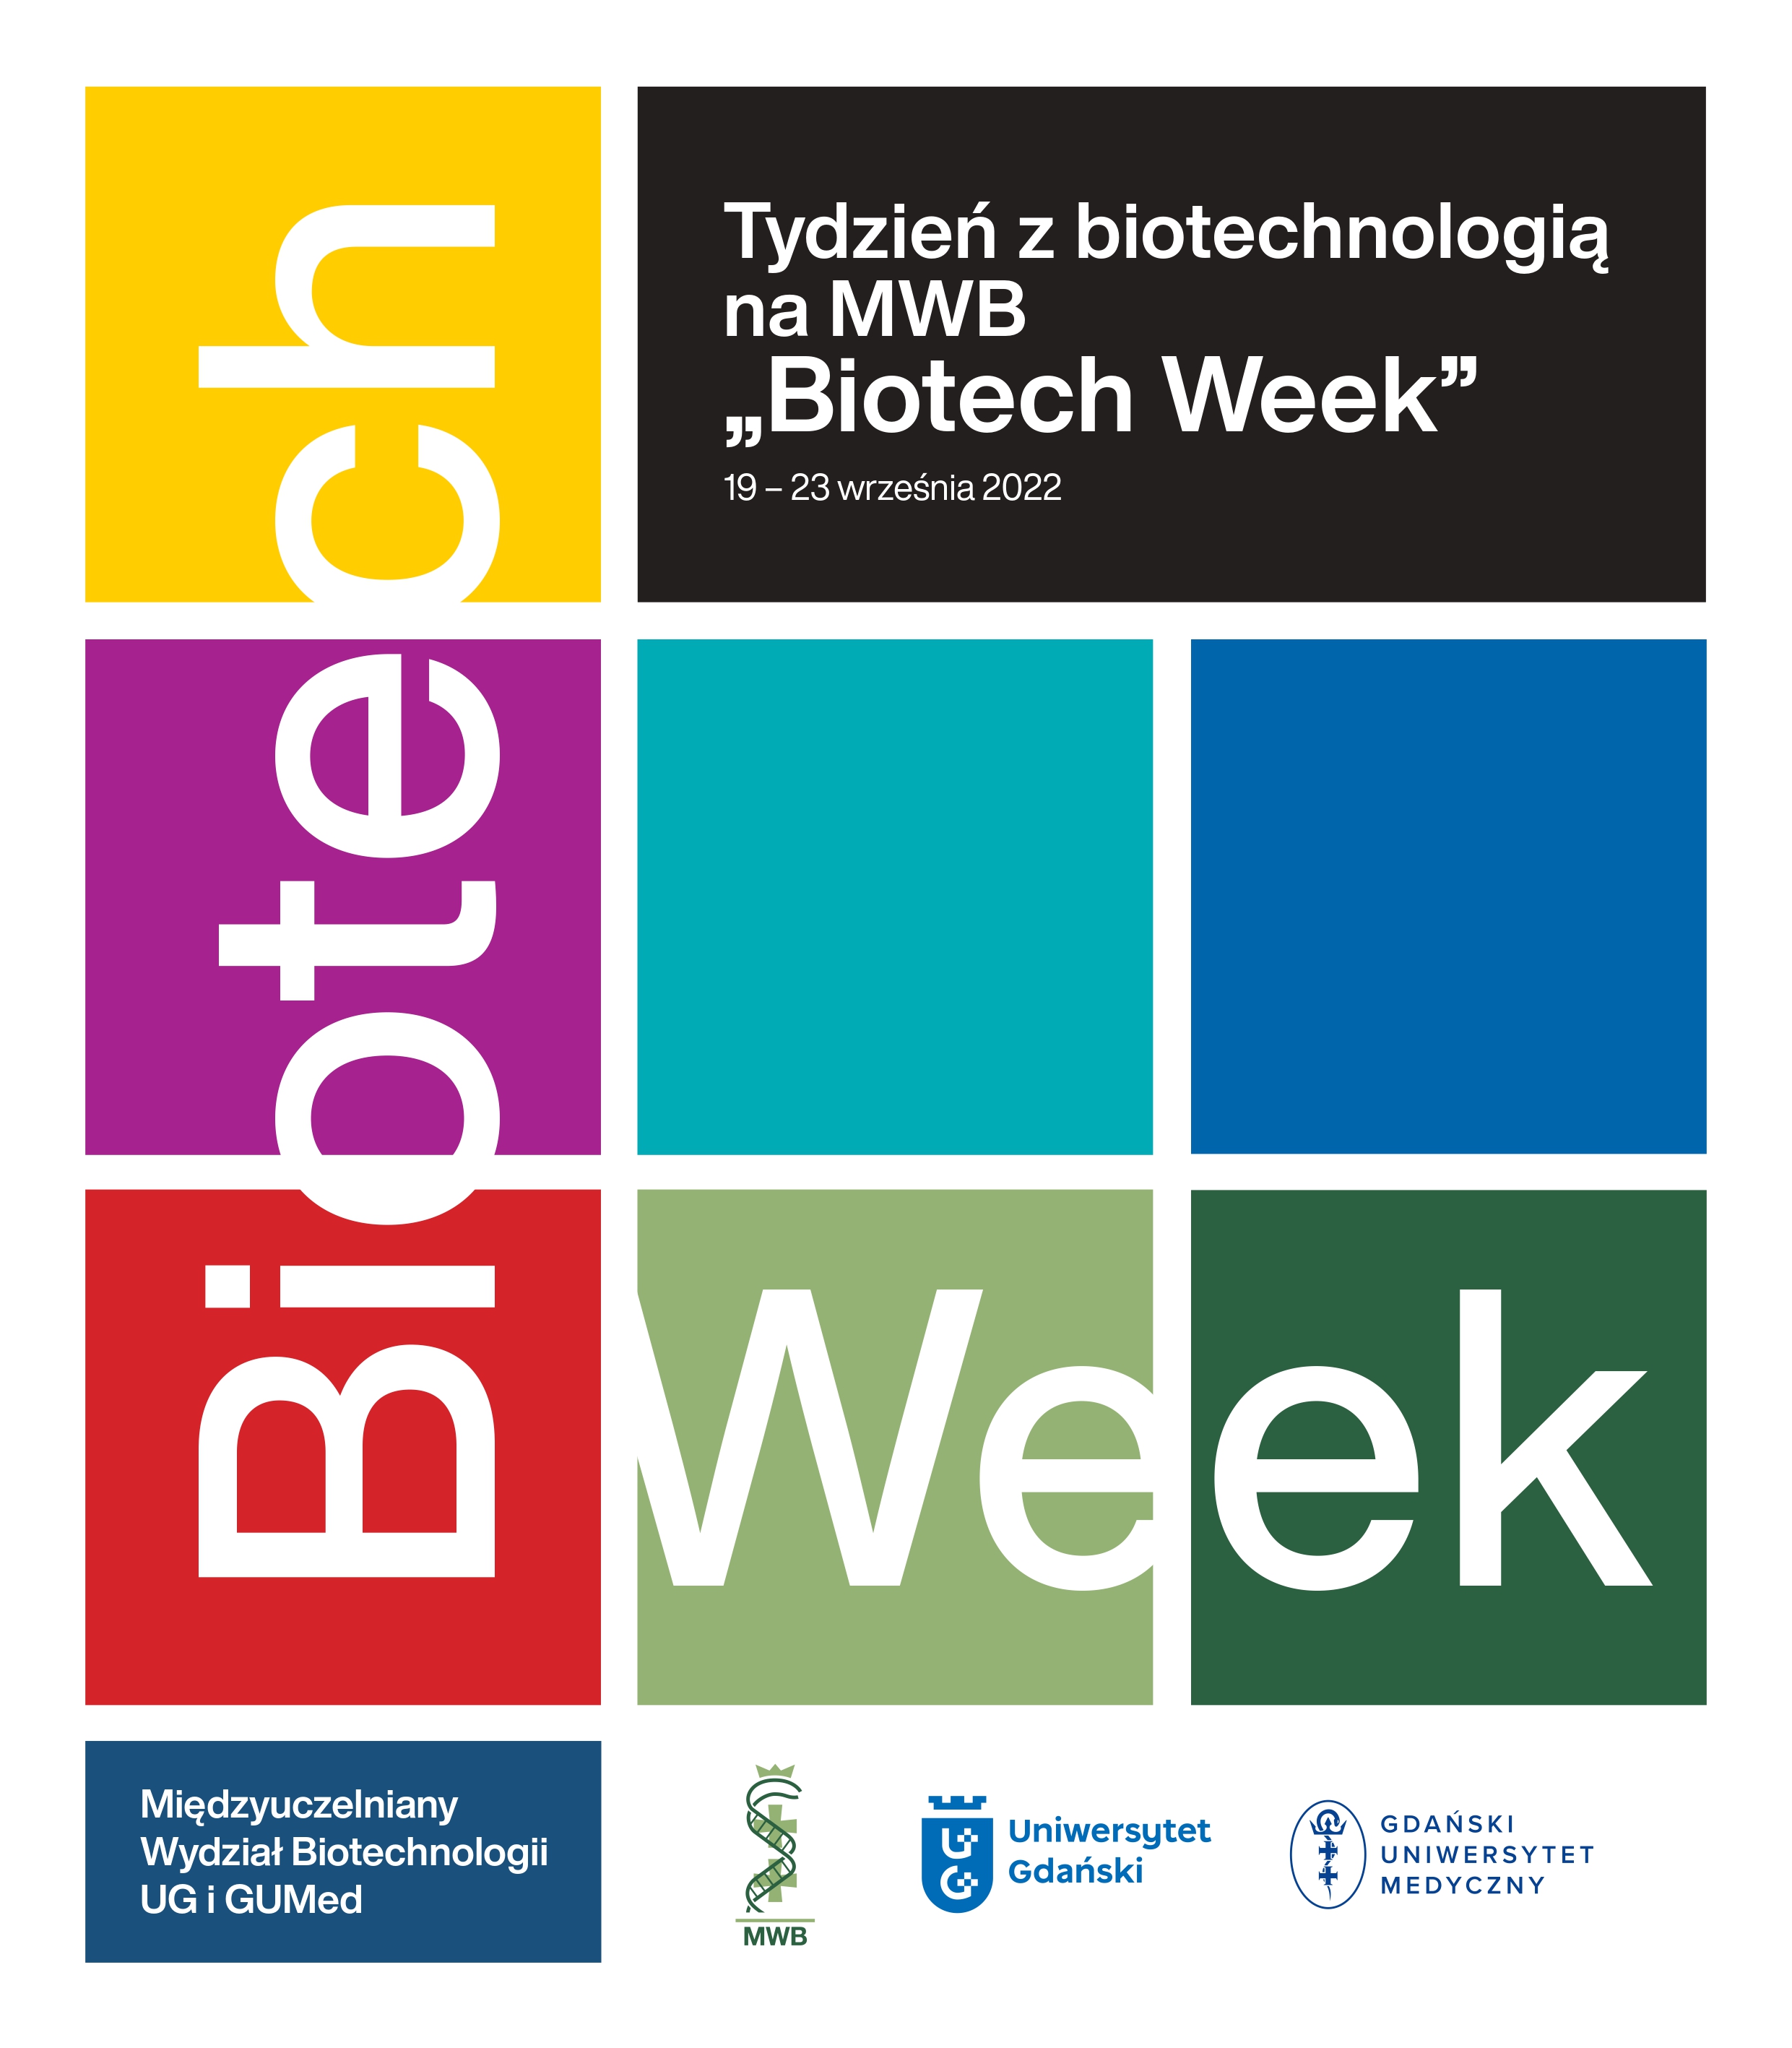 „Biotech Week” CZYLI TYDZIEŃ Z BIOTECHNOLOGIĄ NA MWB